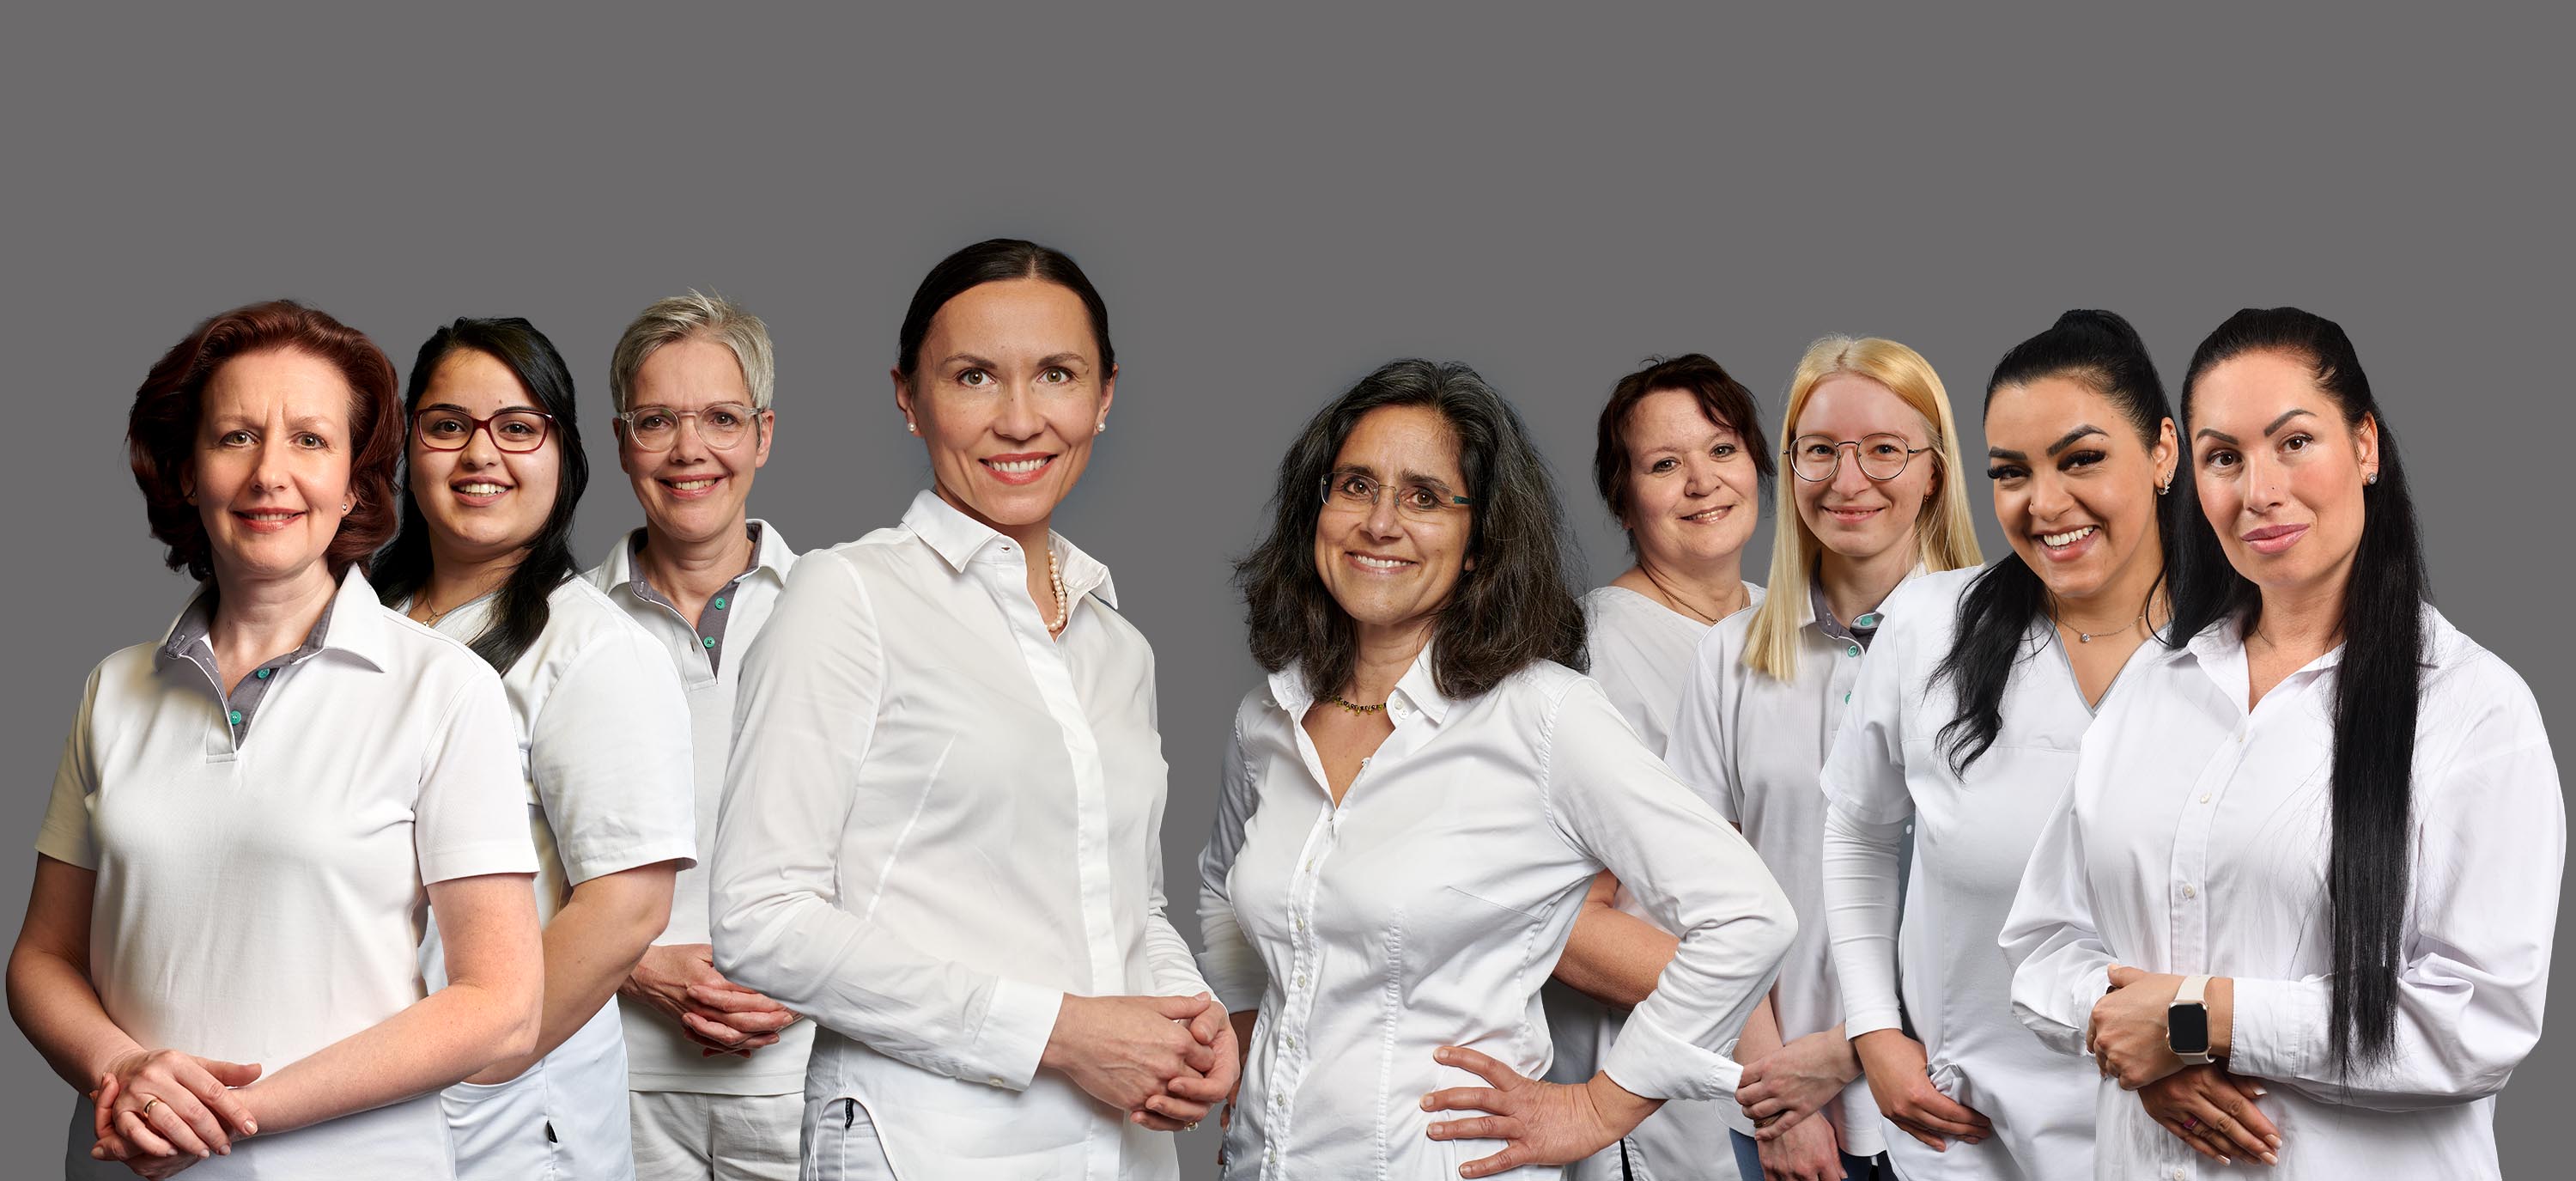 Das Team der Zahnärztlichen Praxisgemeinschaft an der Oberen Laube 51, Konstanz